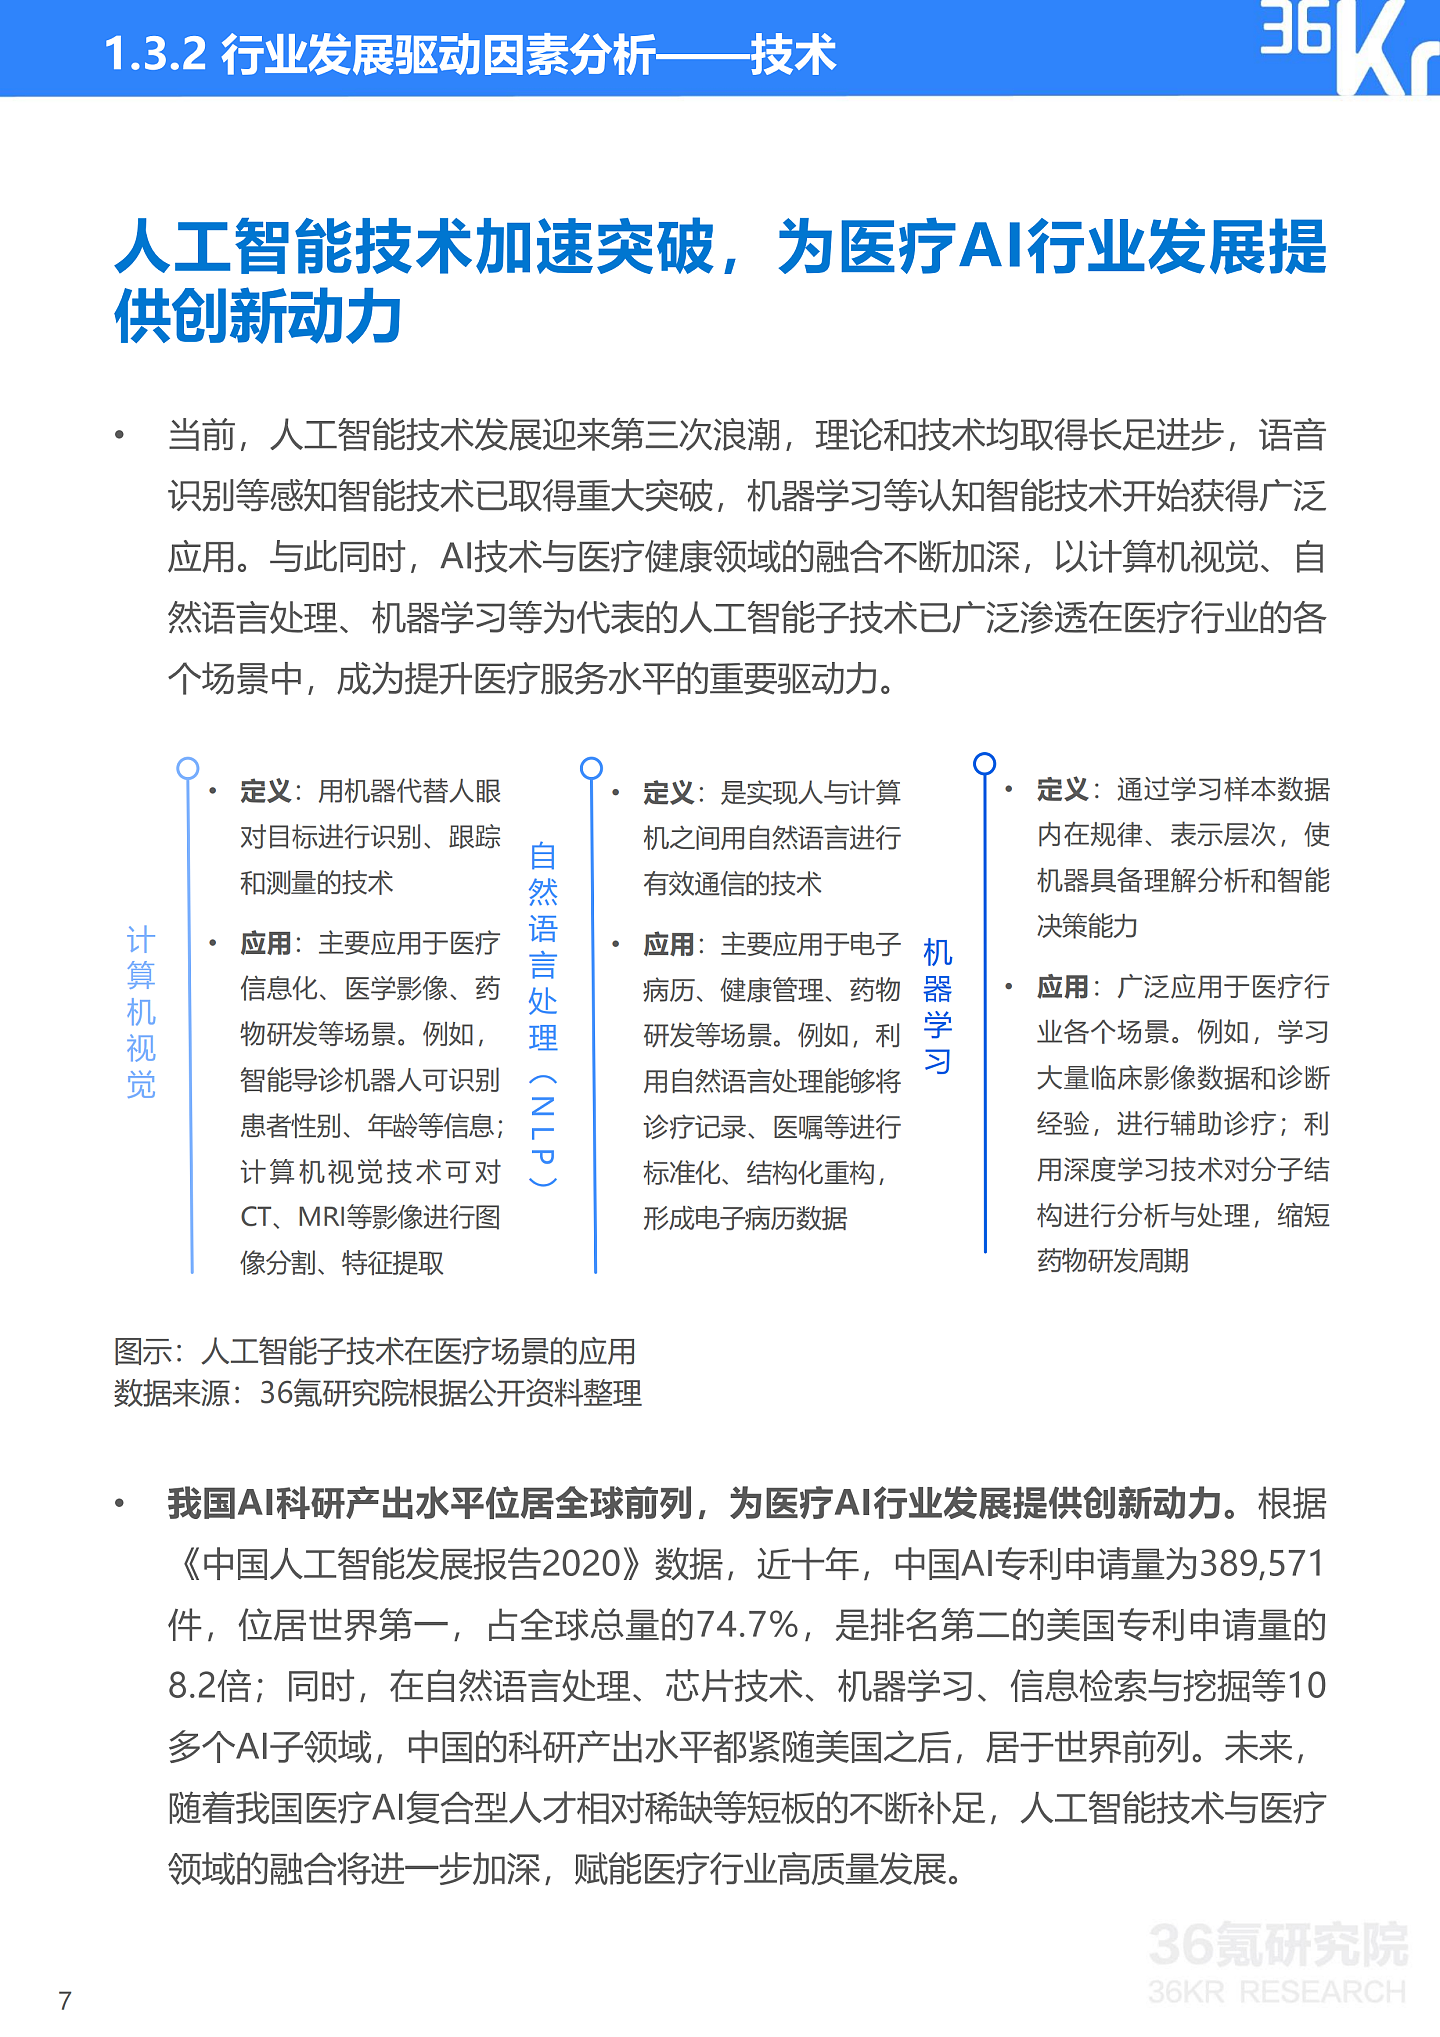 36氪研究院 | 2021年中国医疗AI行业研究报告 - 10